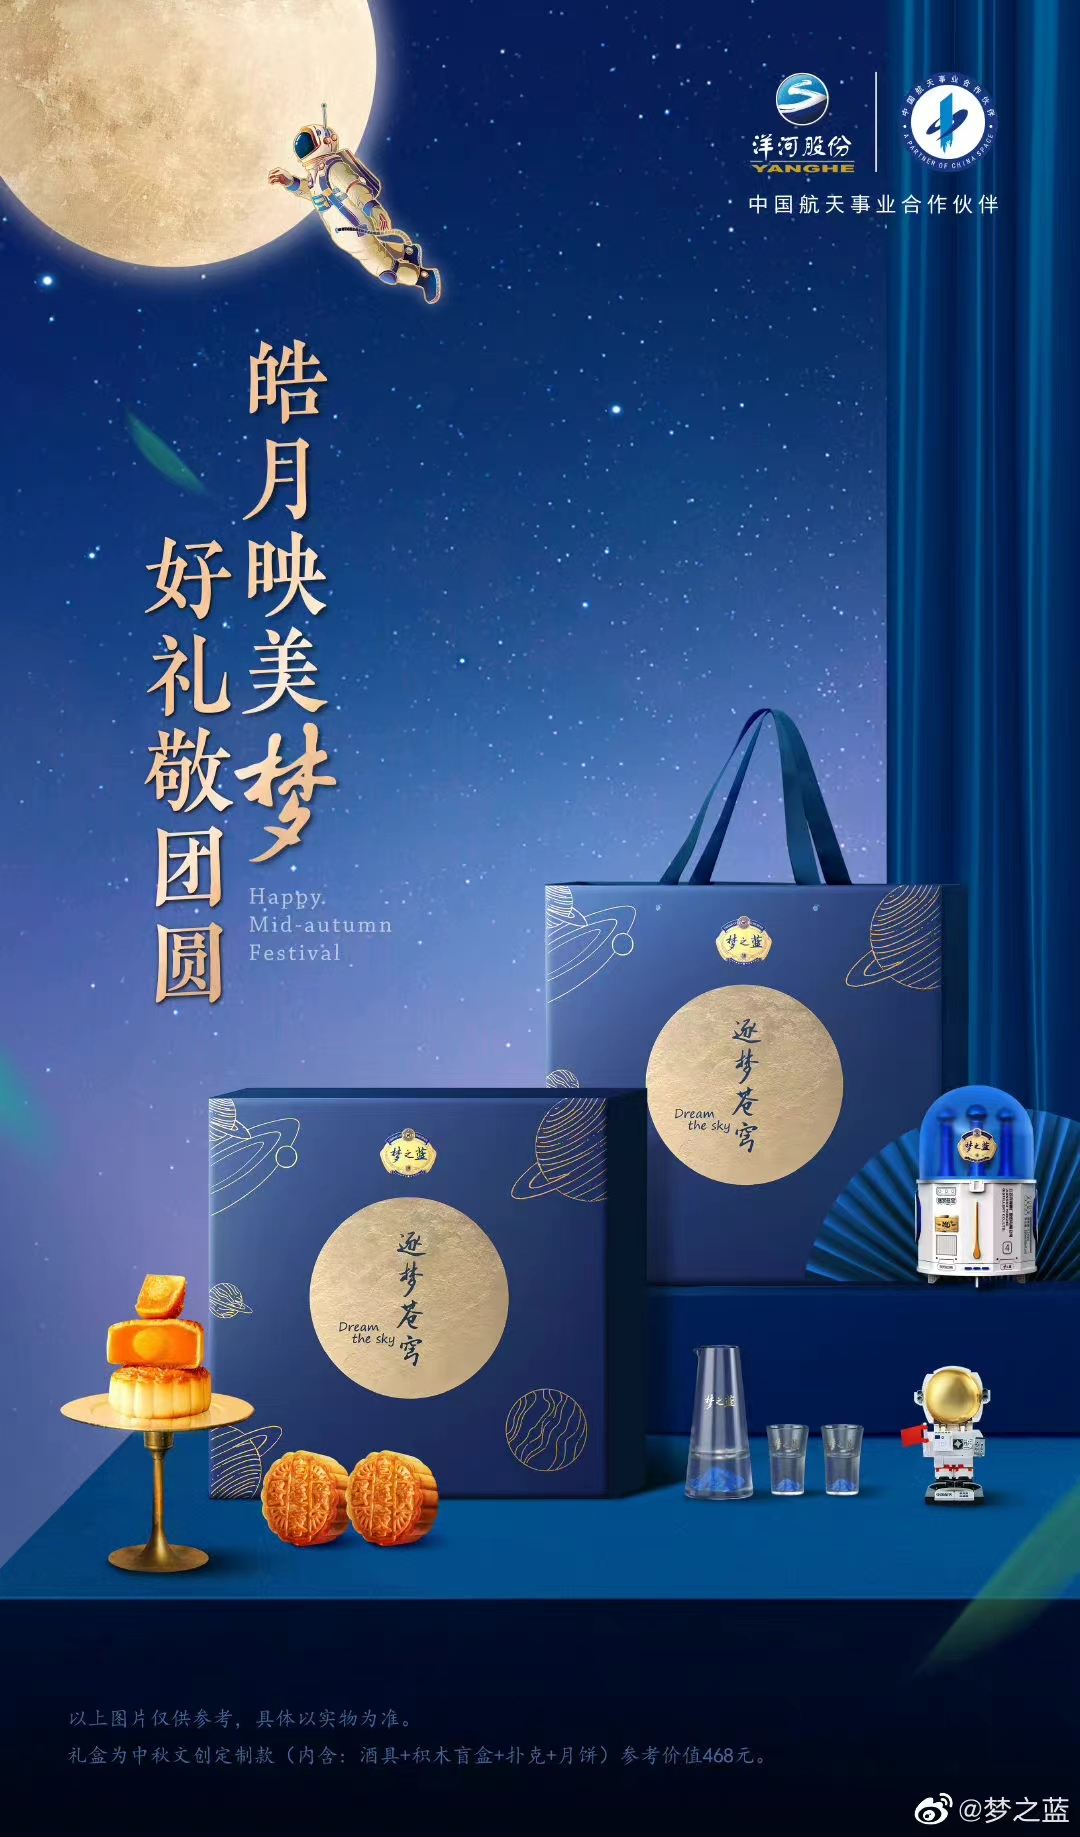 梦之蓝推出中国航天联名款中秋礼盒